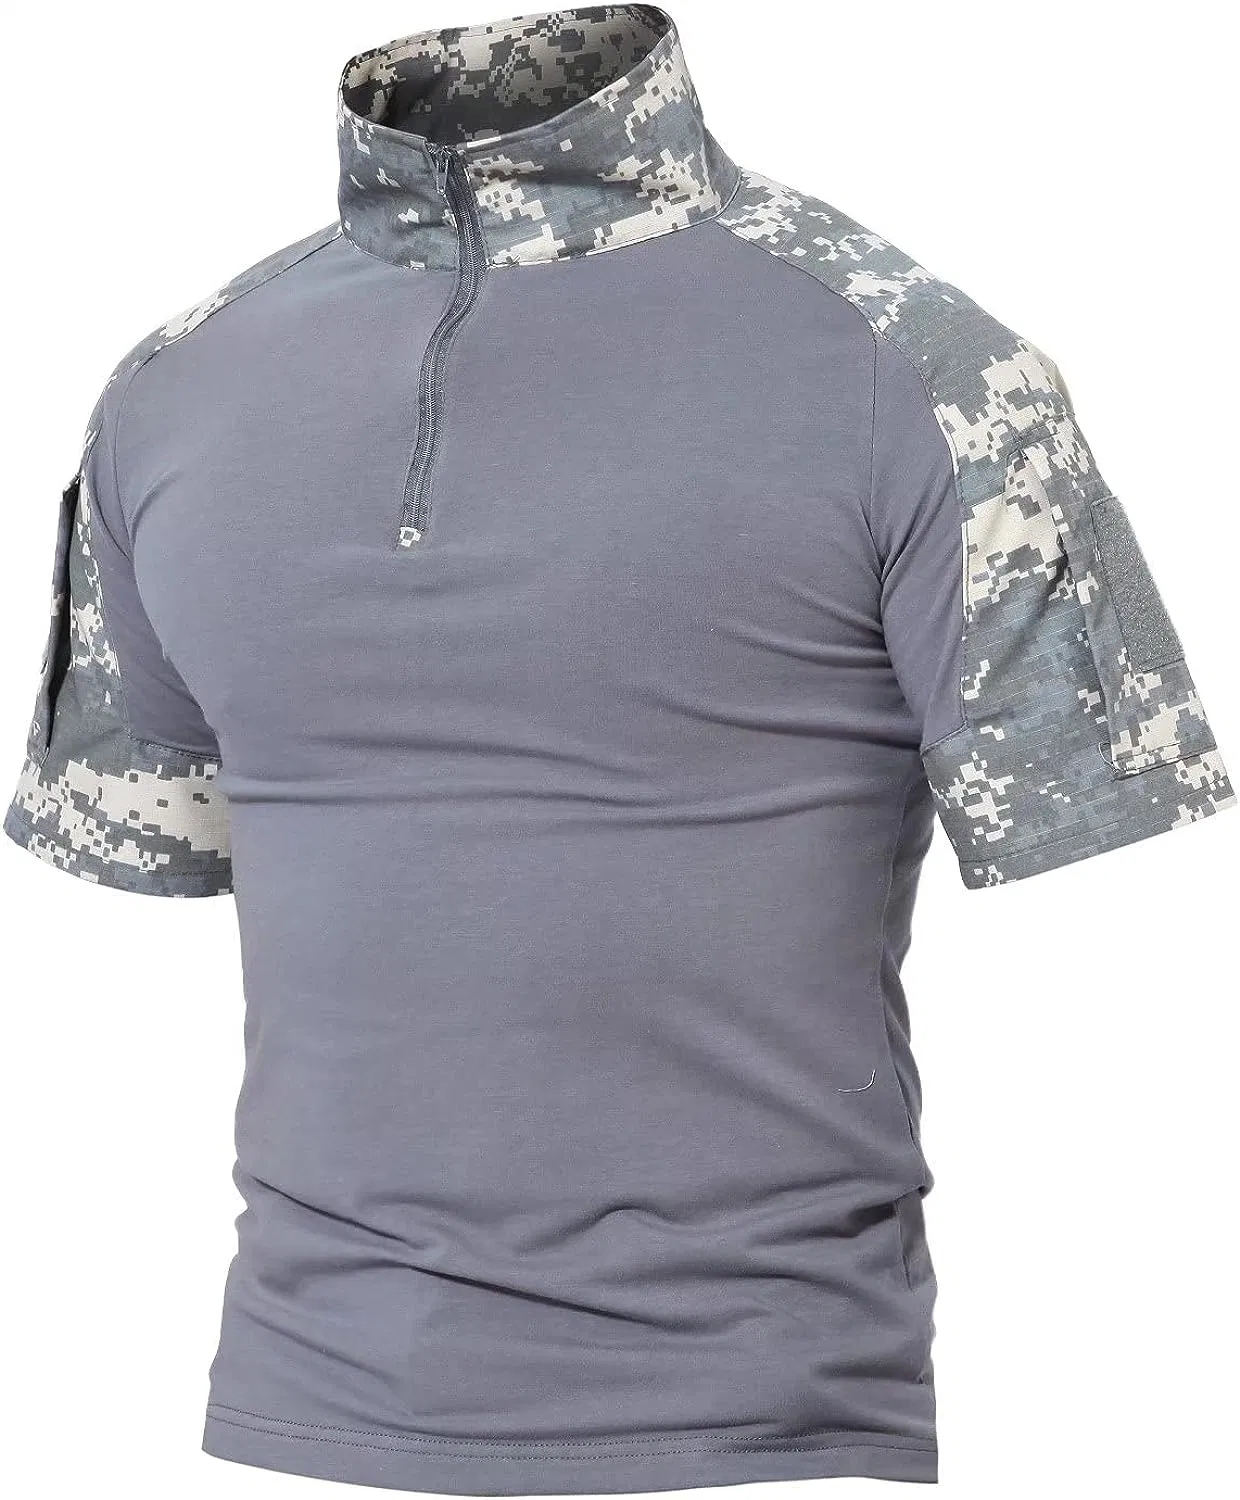 Herren-T-Shirt mit Kurzarm-Ärmeln im Military-Stil